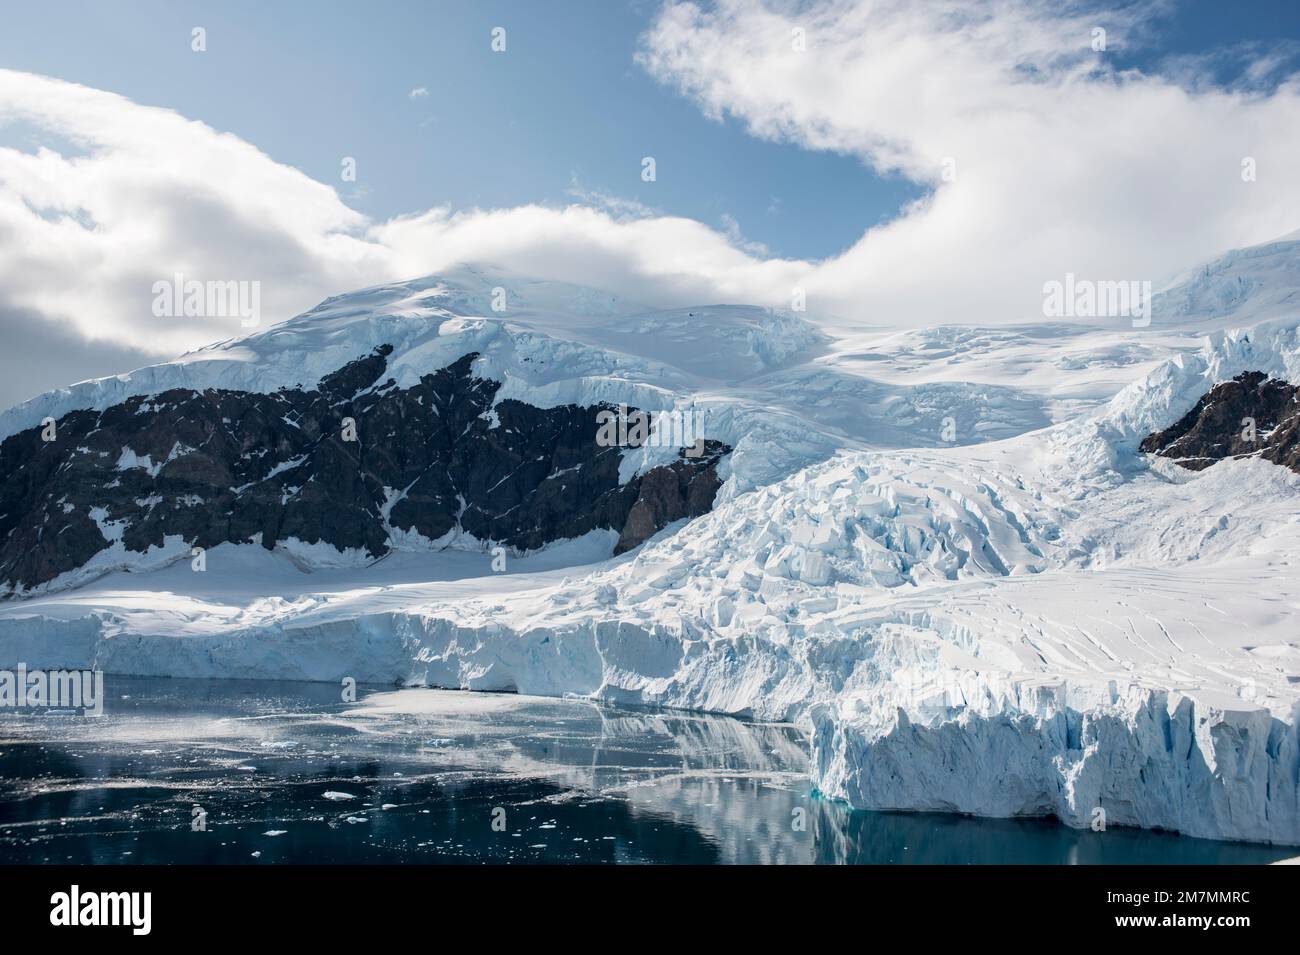 Der Gletscher im Hafen von Neko, antarktis, knackte, bevor er ins Meer fiel Stockfoto